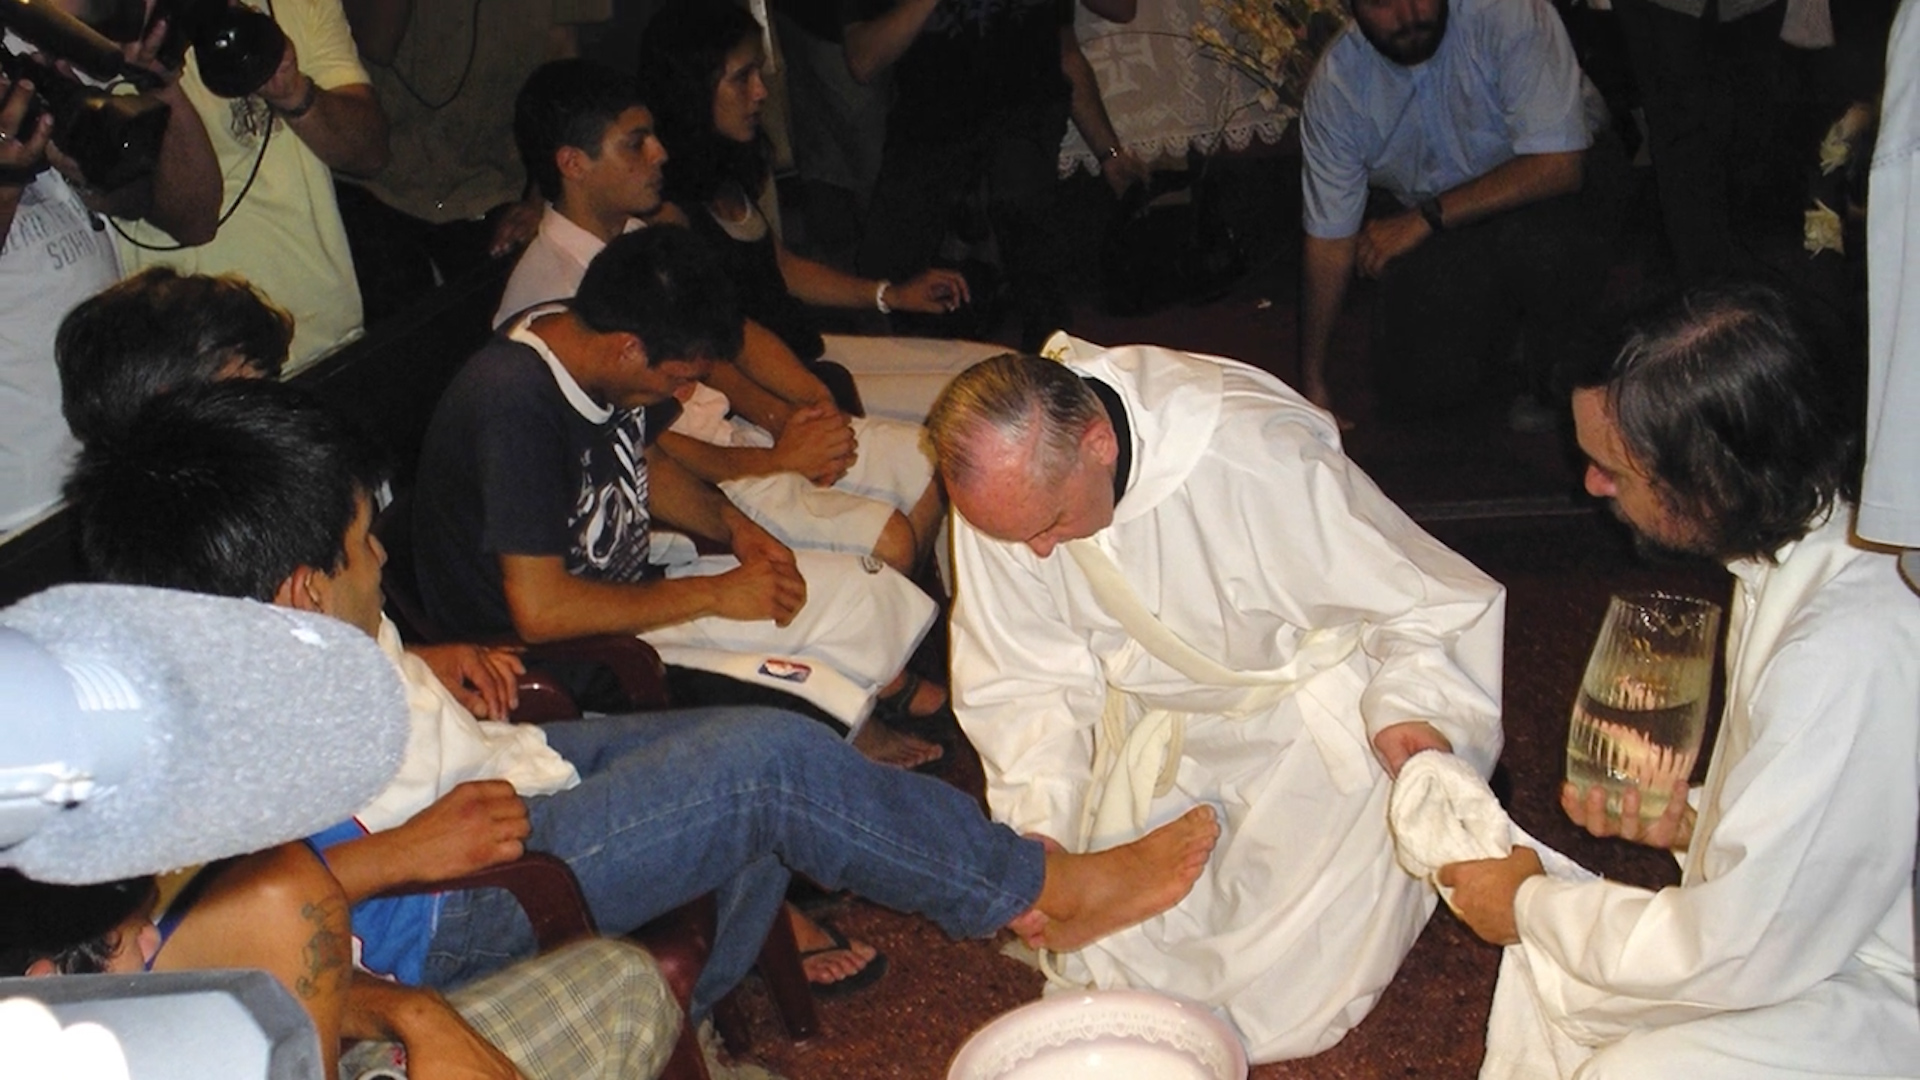 Villa 31, año 2008. El cardenal Jorge Bergoglio, futuro papa Francisco, lava los pies de un grupo de jóvenes en el primer Hogar de Cristo